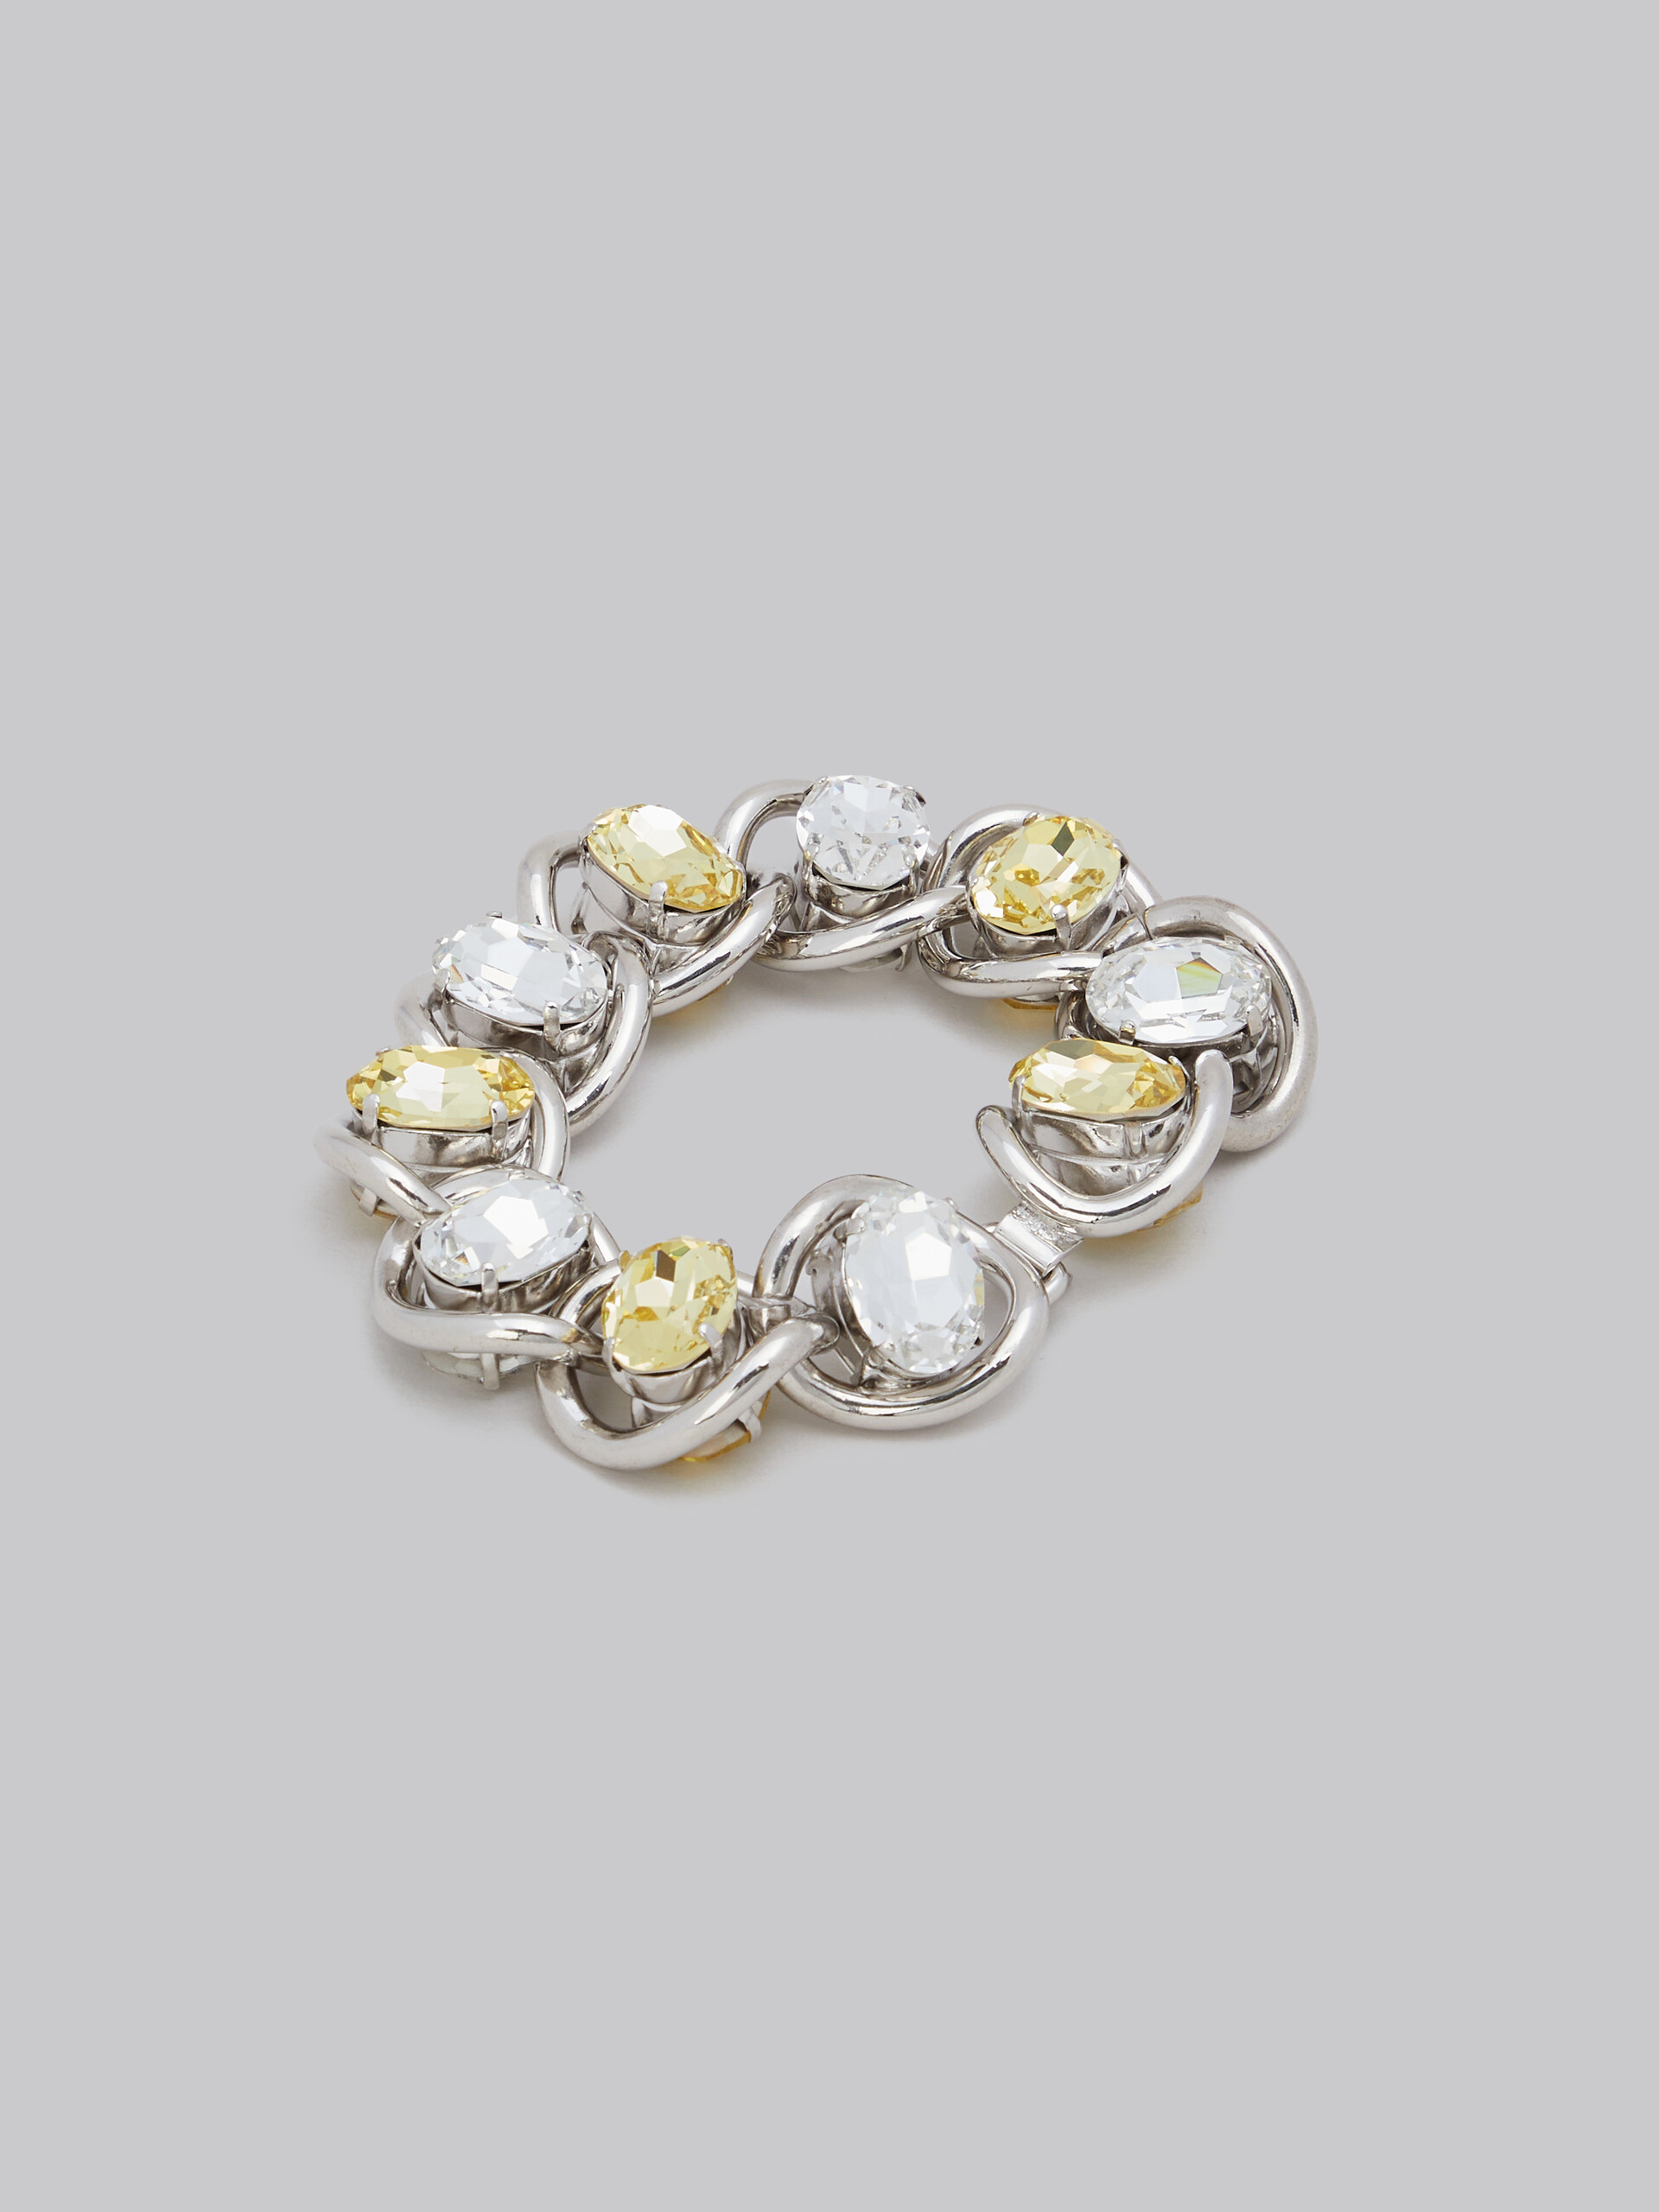 Bracelet en chaîne épaisse avec strass transparents et jaunes - Bracelets - Image 3